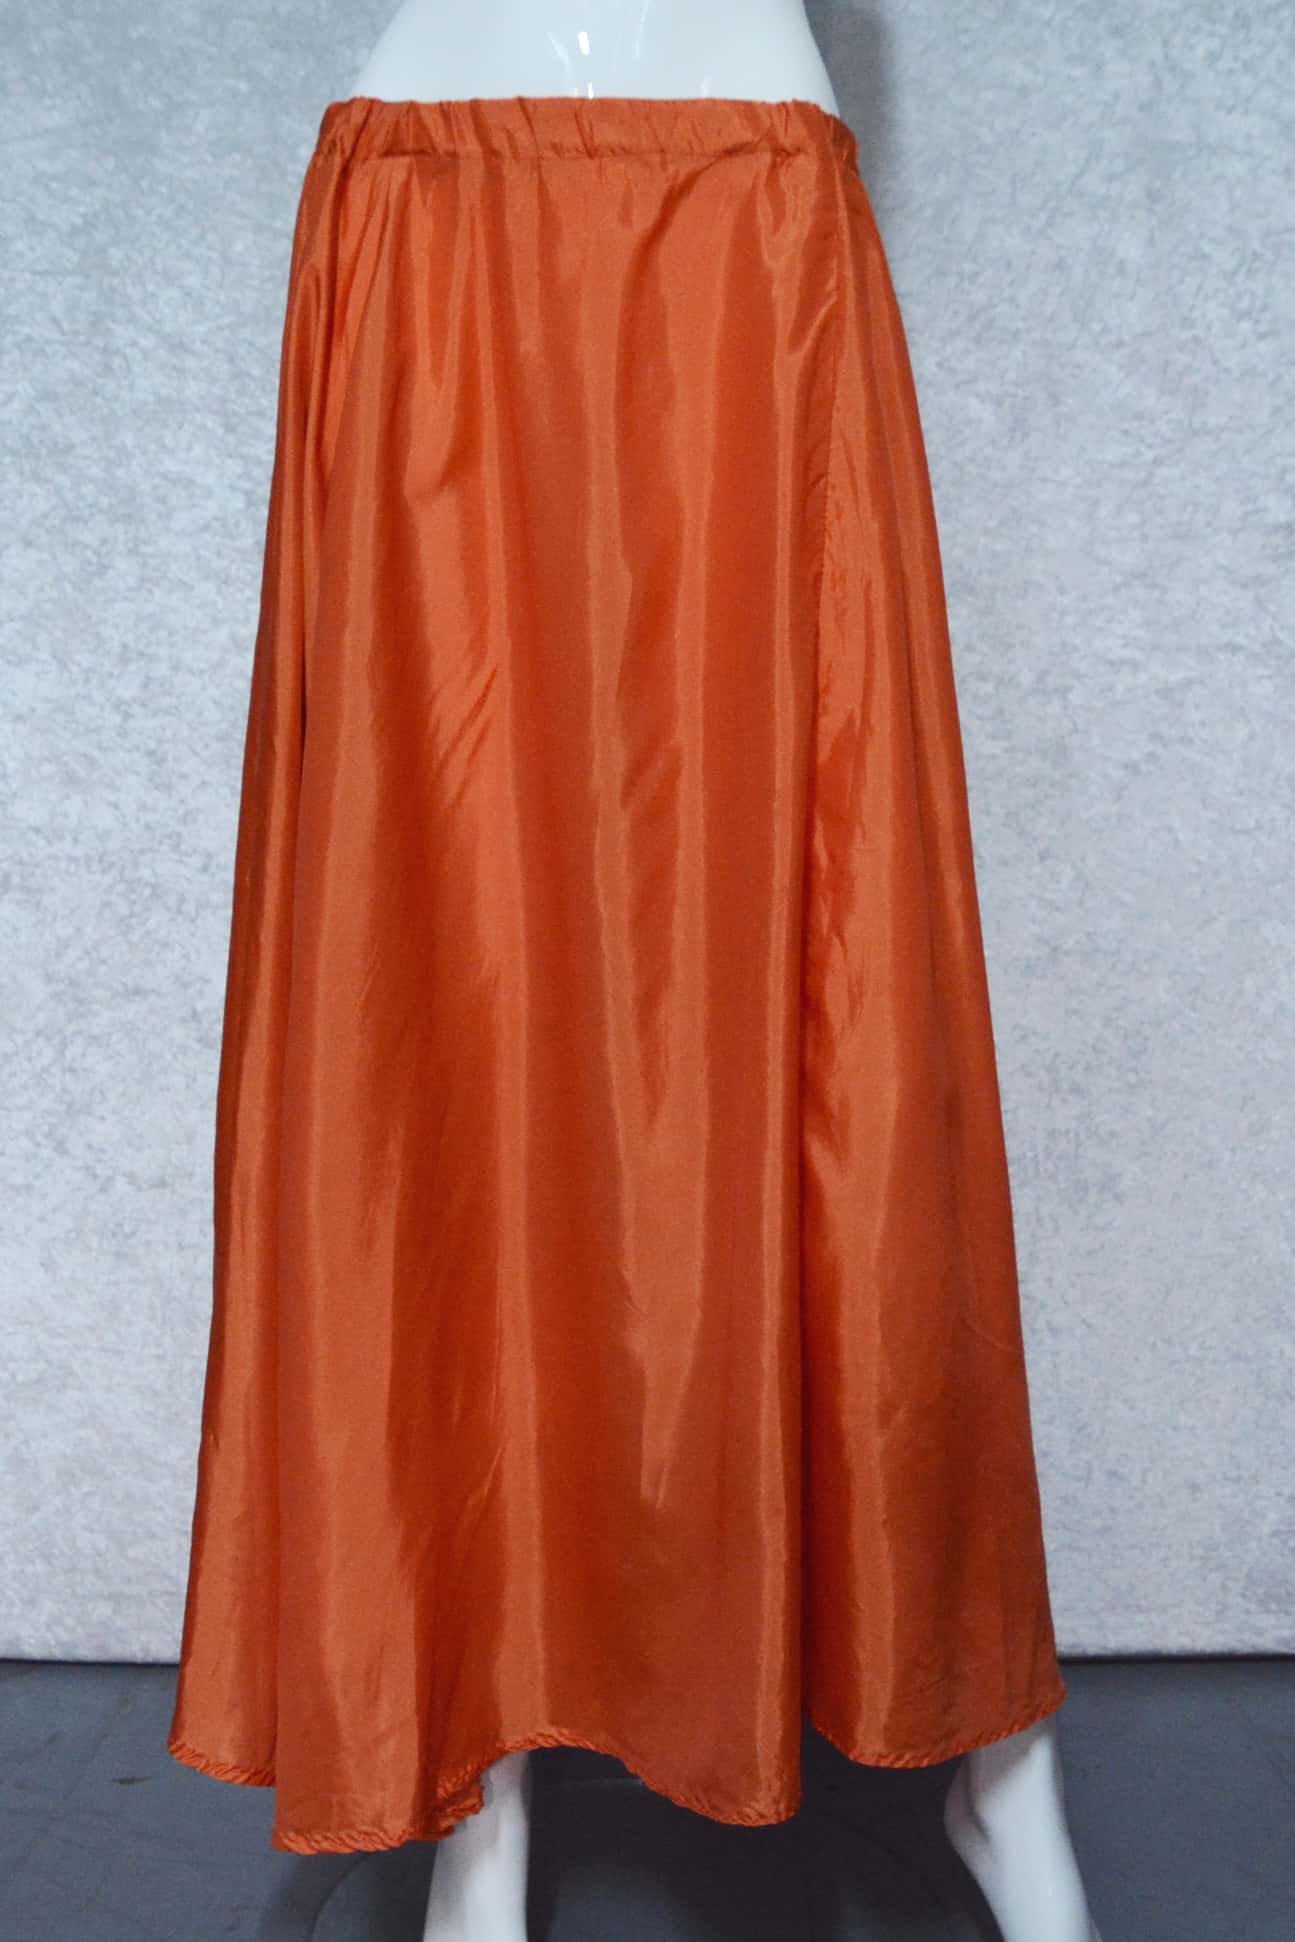 Burnt Orange Satin Skirt - Dance Of Life